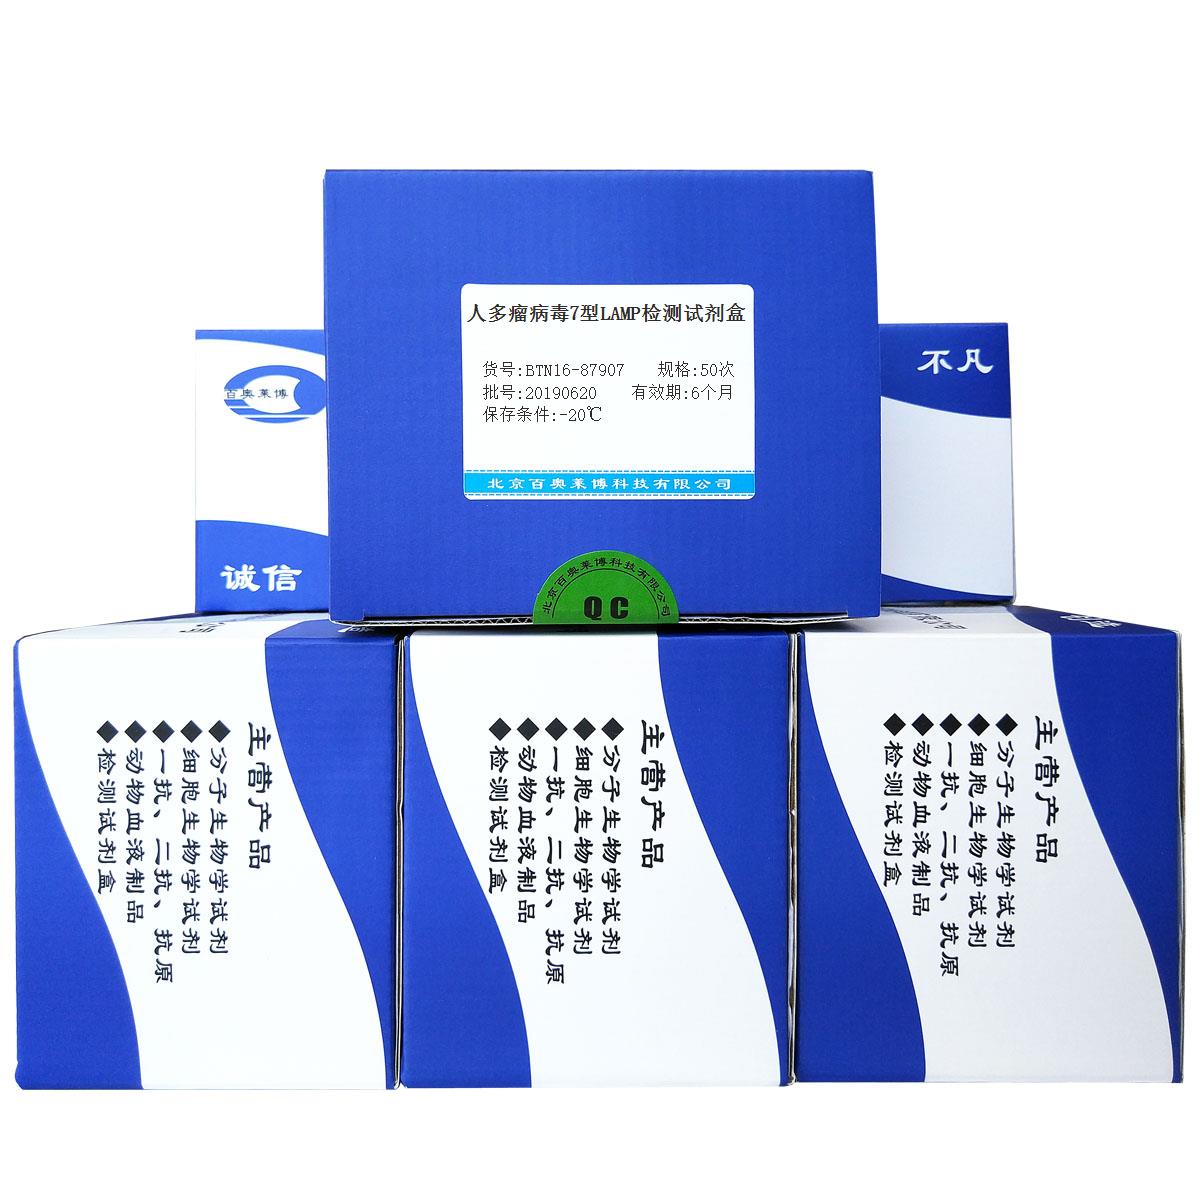 人多瘤病毒7型LAMP检测试剂盒北京现货